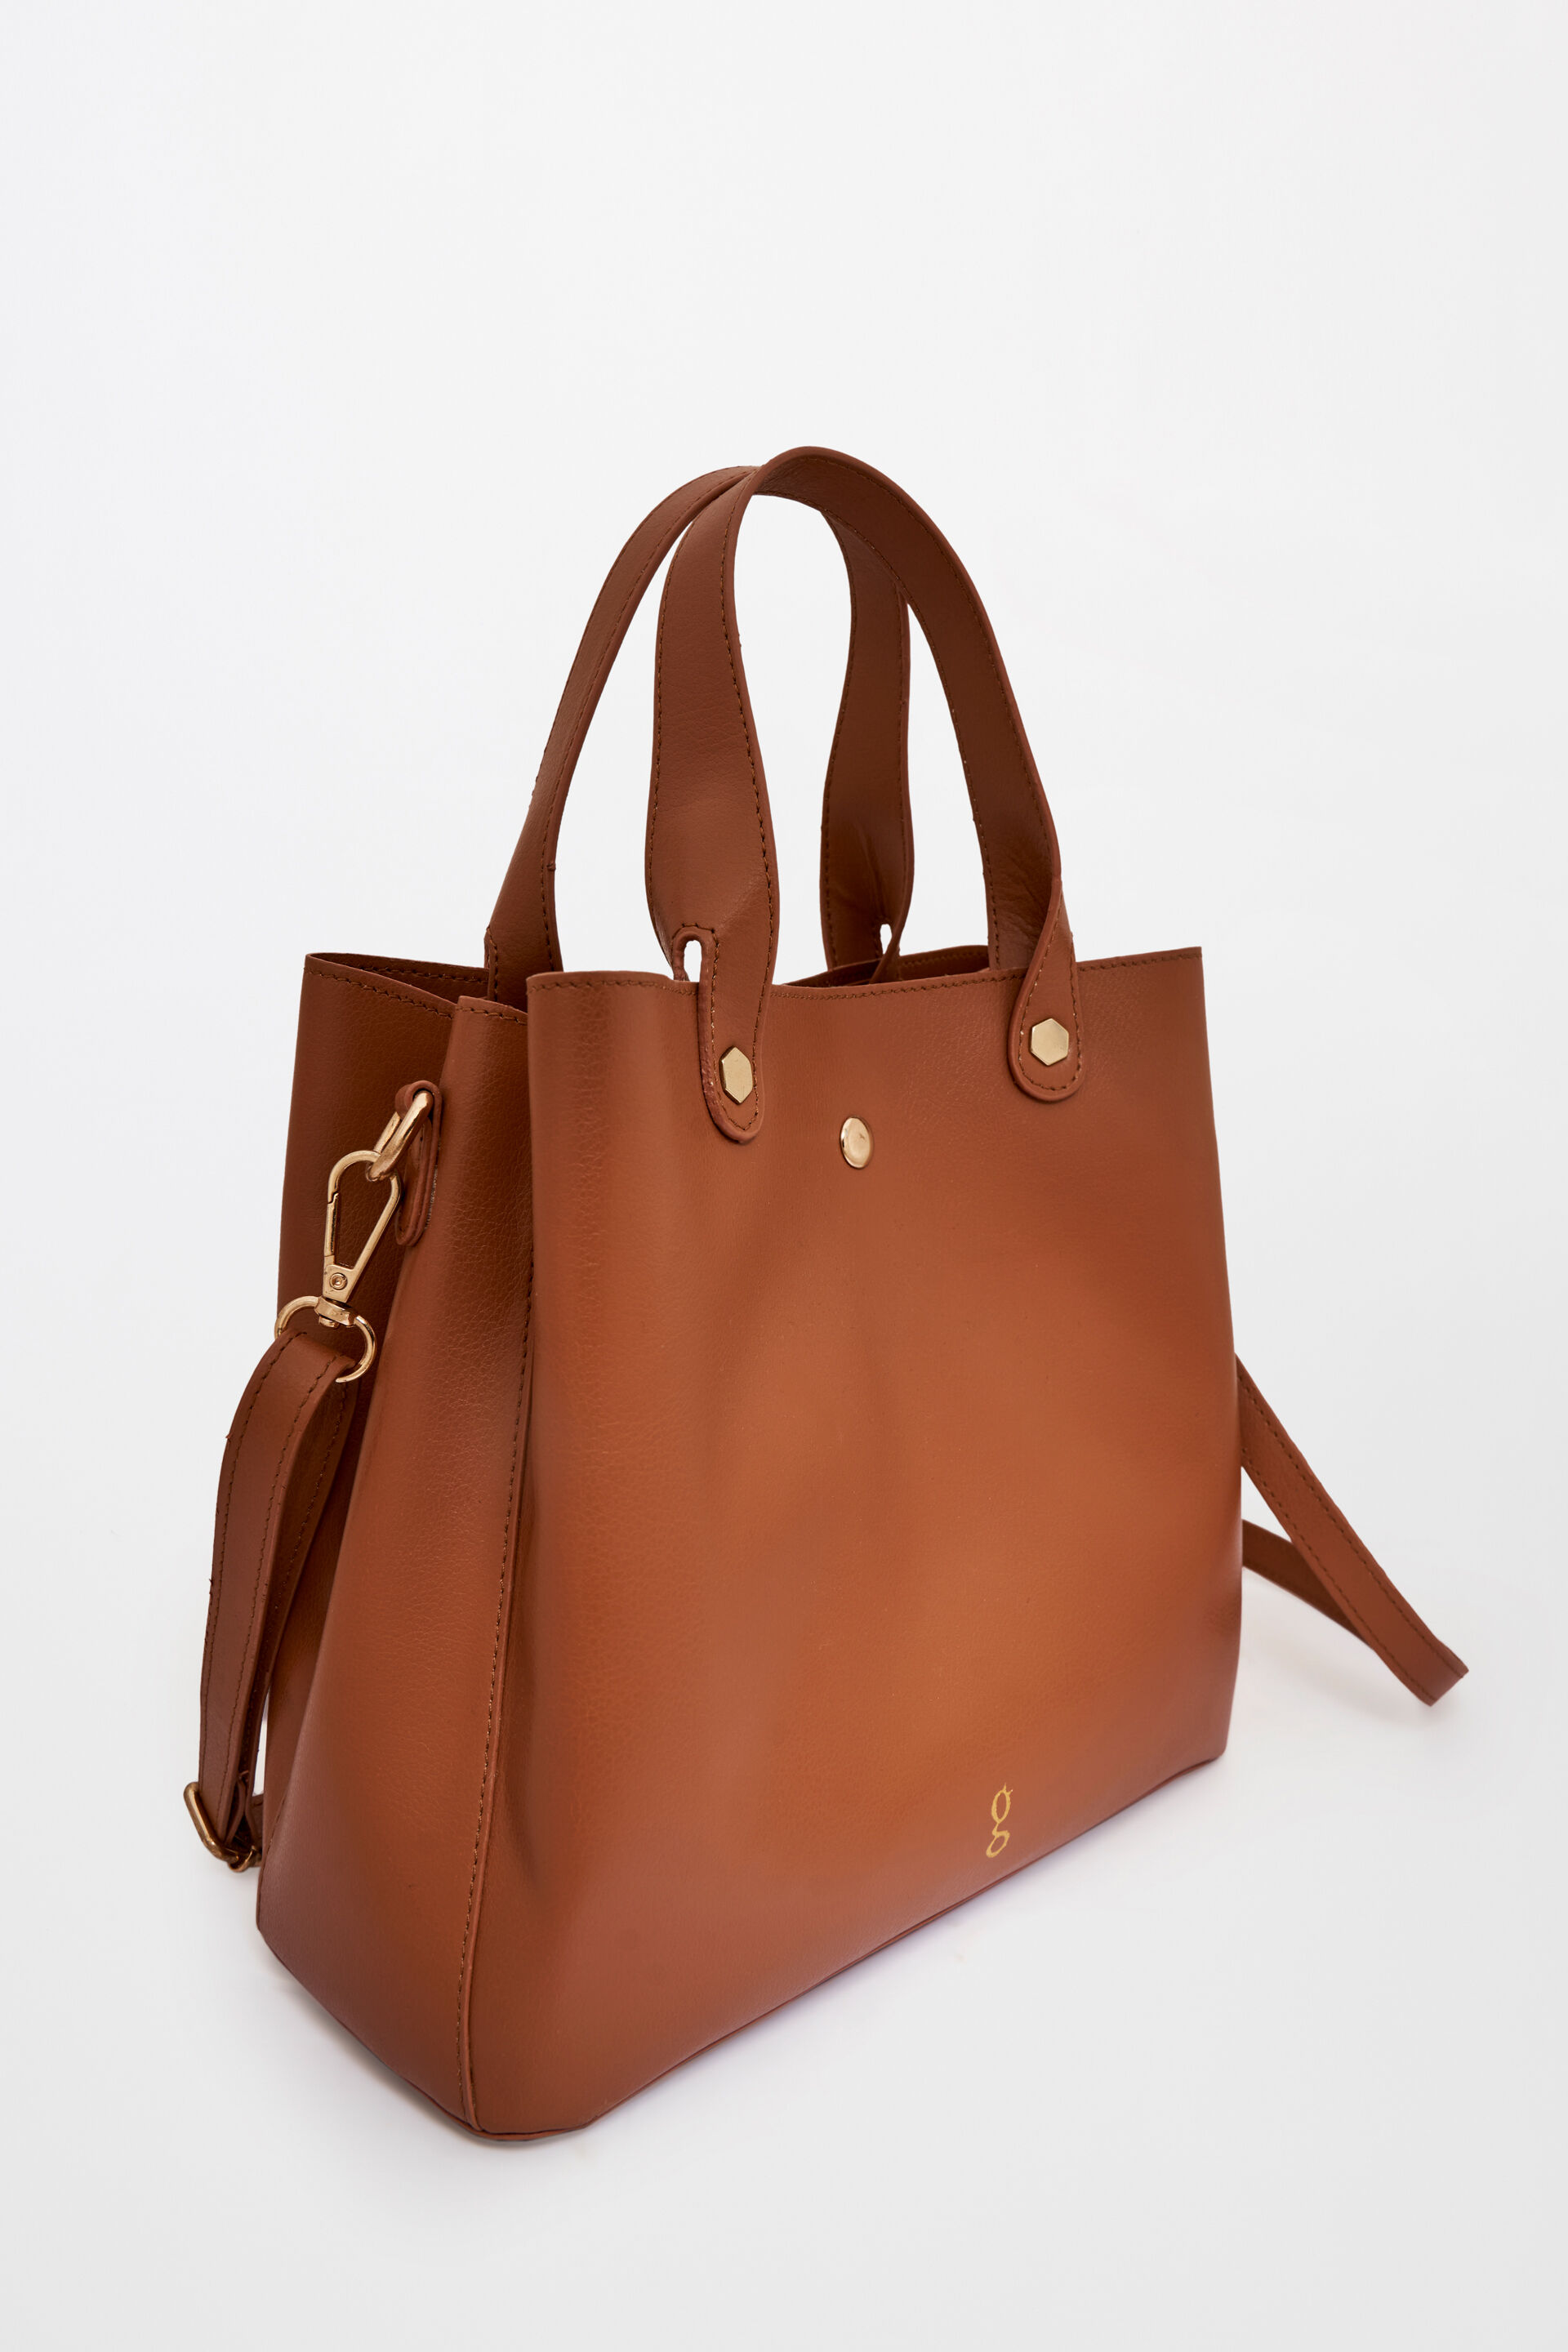 BAGSWORKS Womens Handbag/Ladies Shoulder Bag/Girls tote bag/Croc  Pattern/Office Bag for women Ladies Purse 01 (Lavender) – Bagsworks – Bags  for all Works